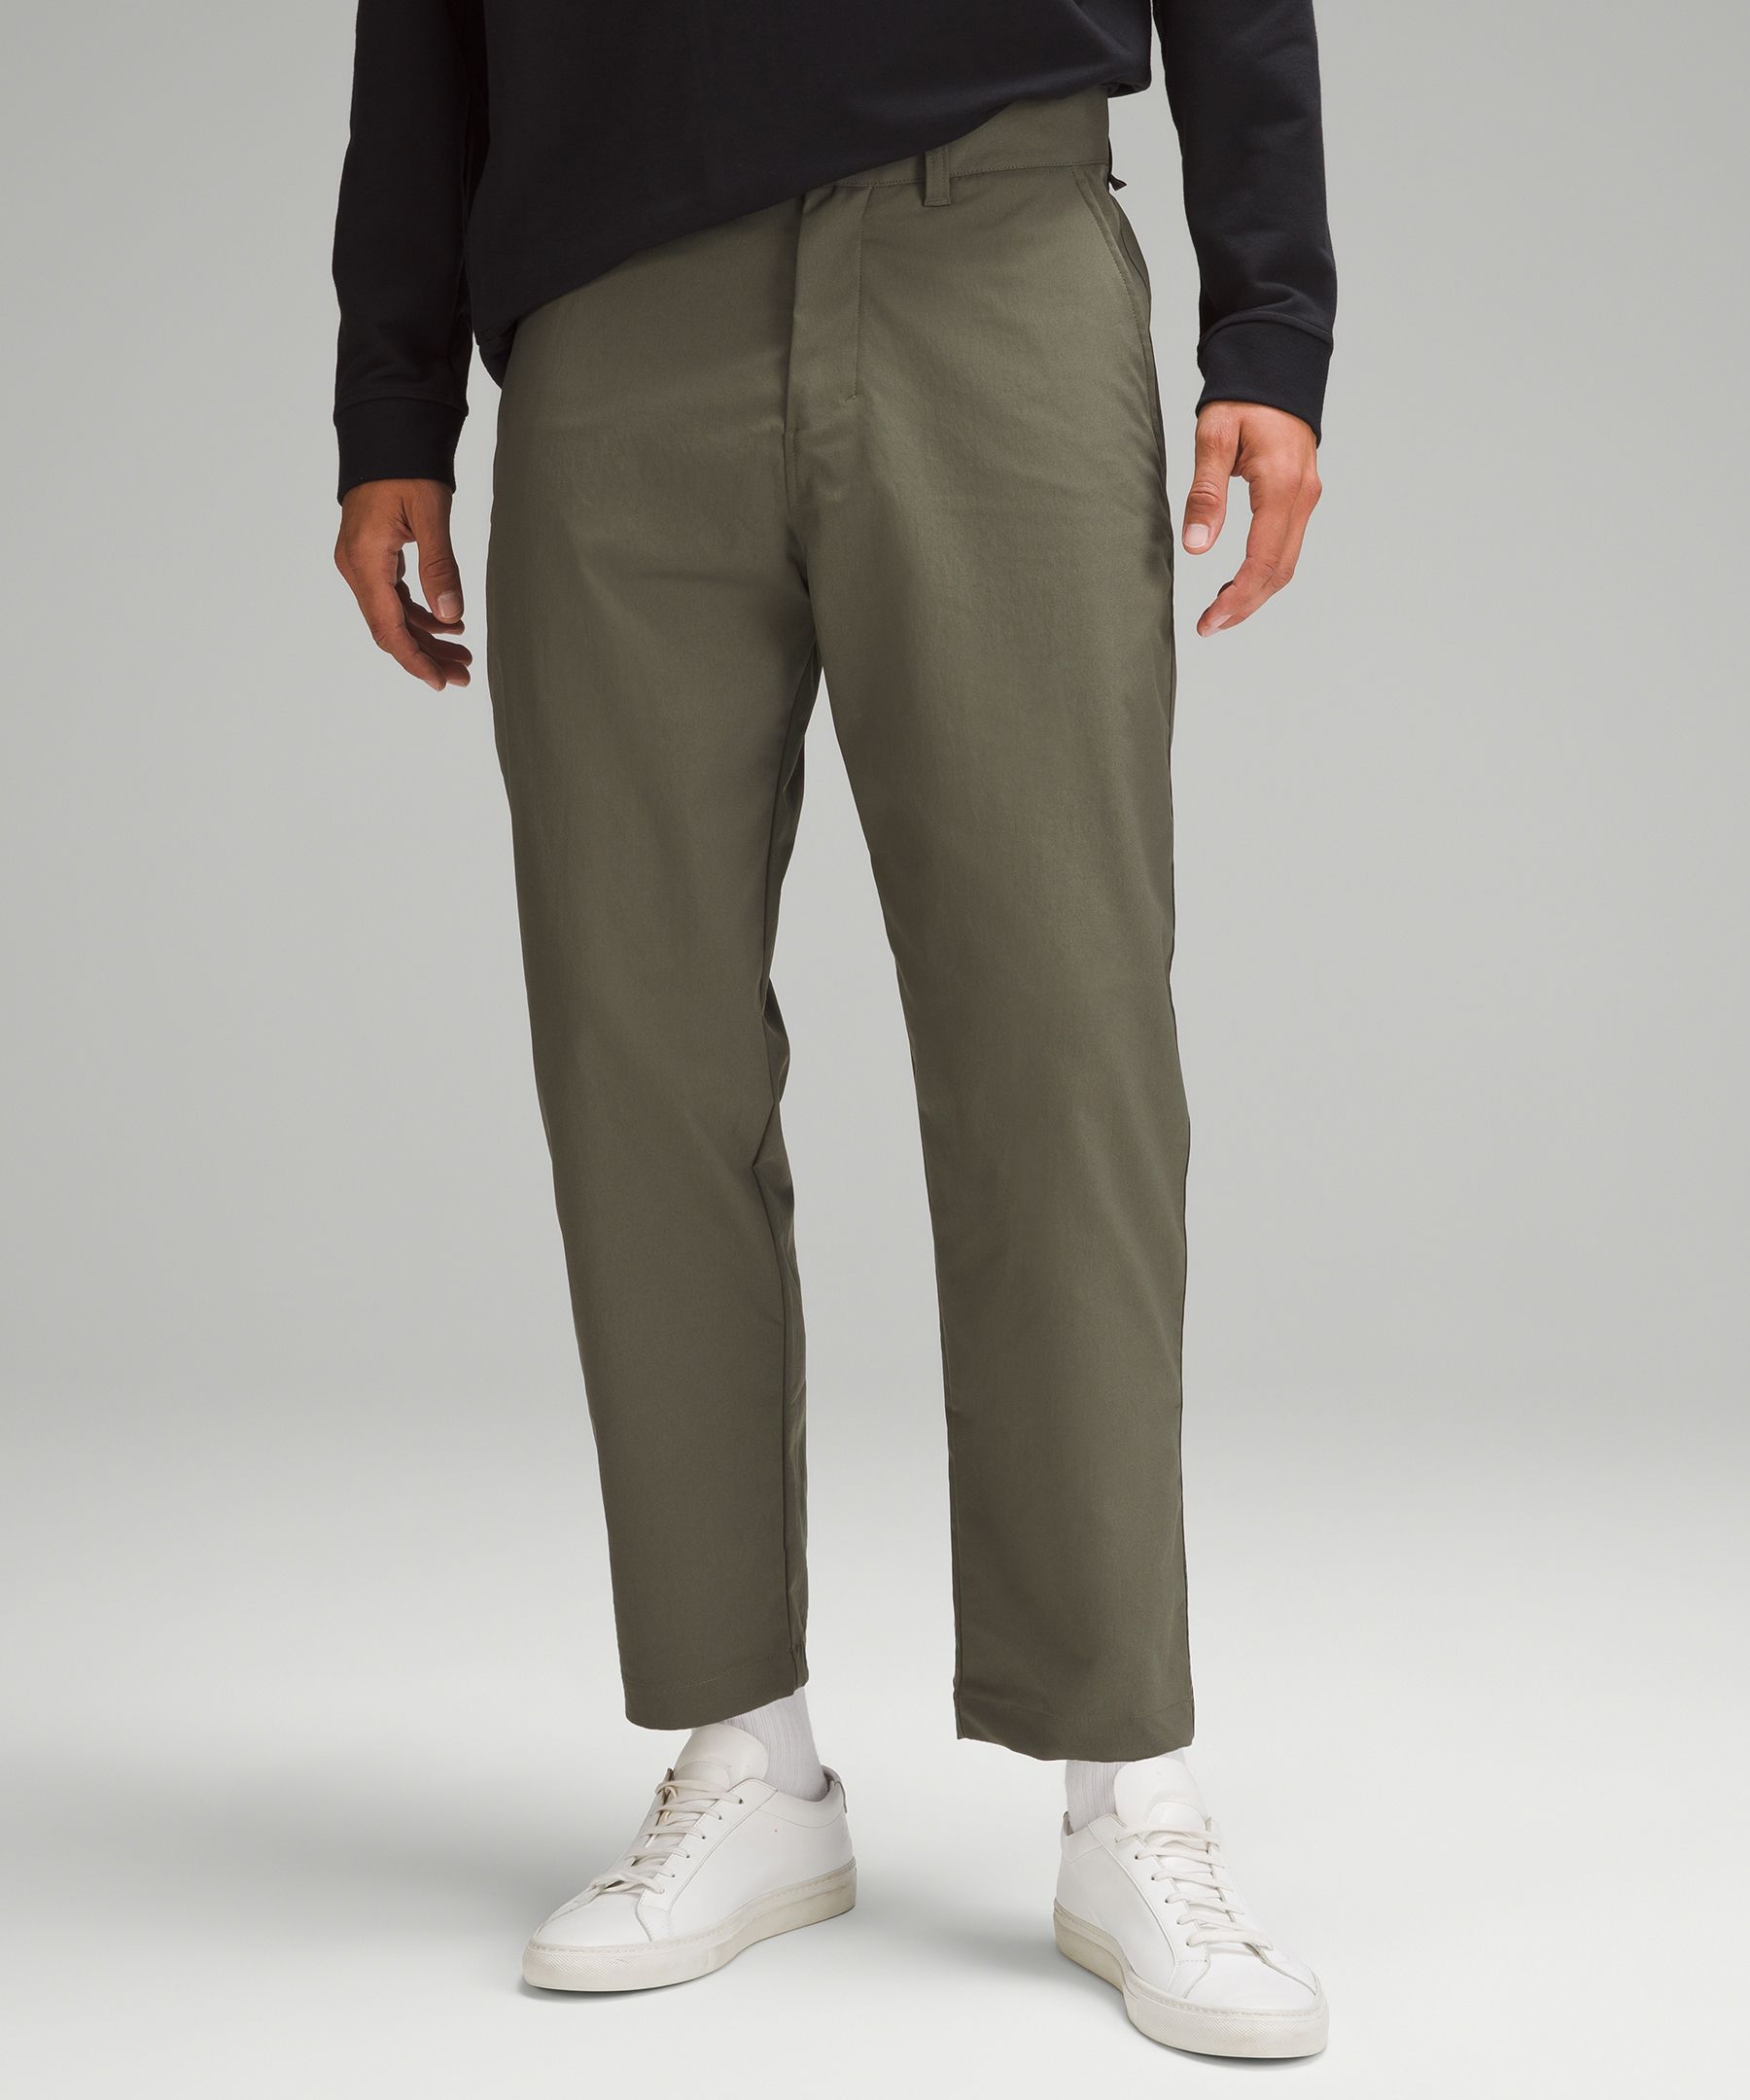 Relaxed Tapered Trouser | Men's Trousers | lululemon